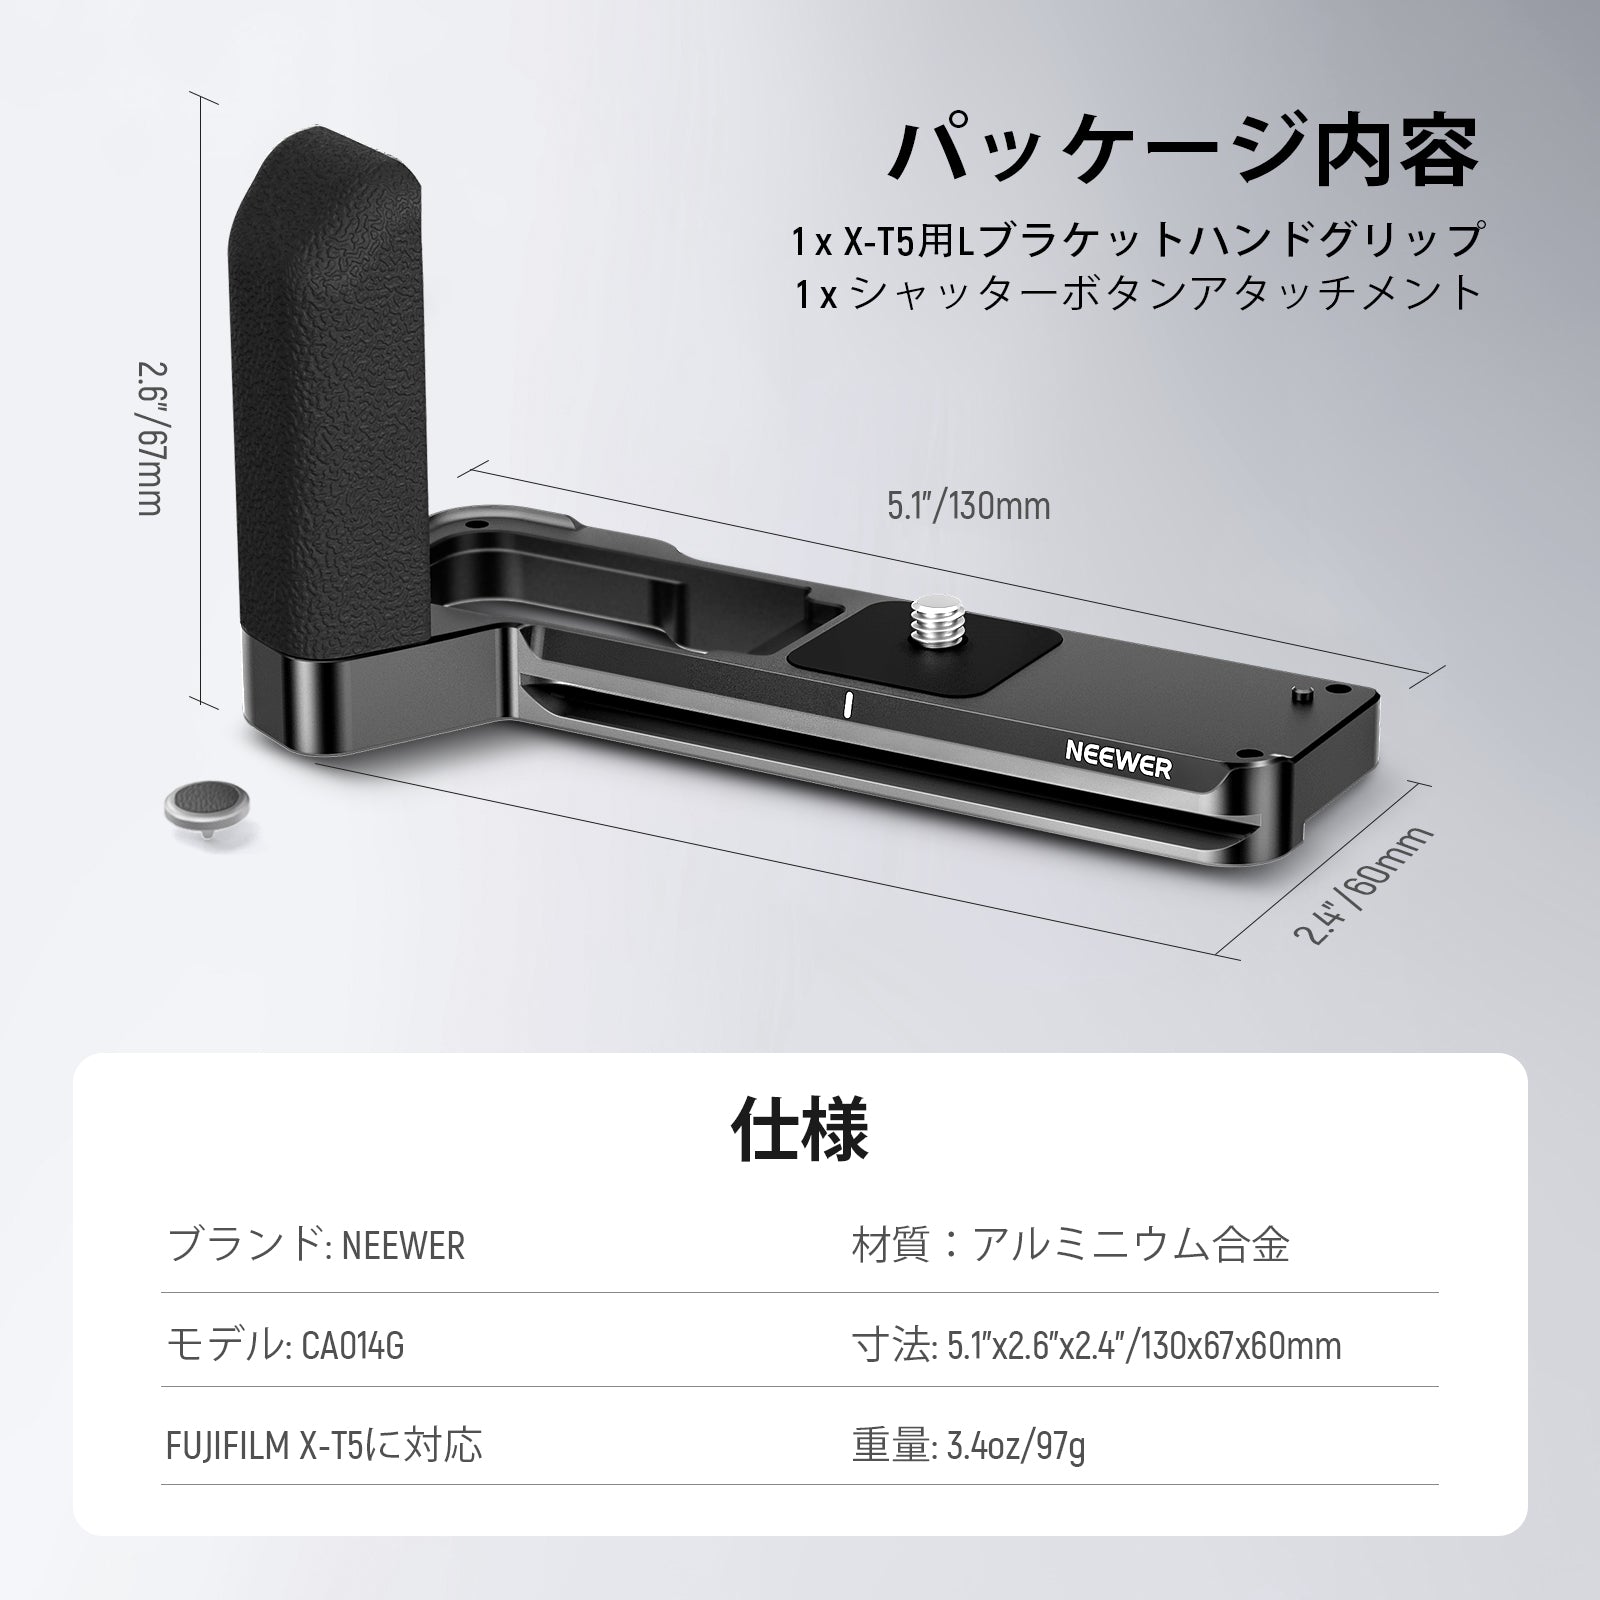 NEEWER CA014G Lハンドルグリップ Fujifilm X-T5 用 – NEEWER.JP